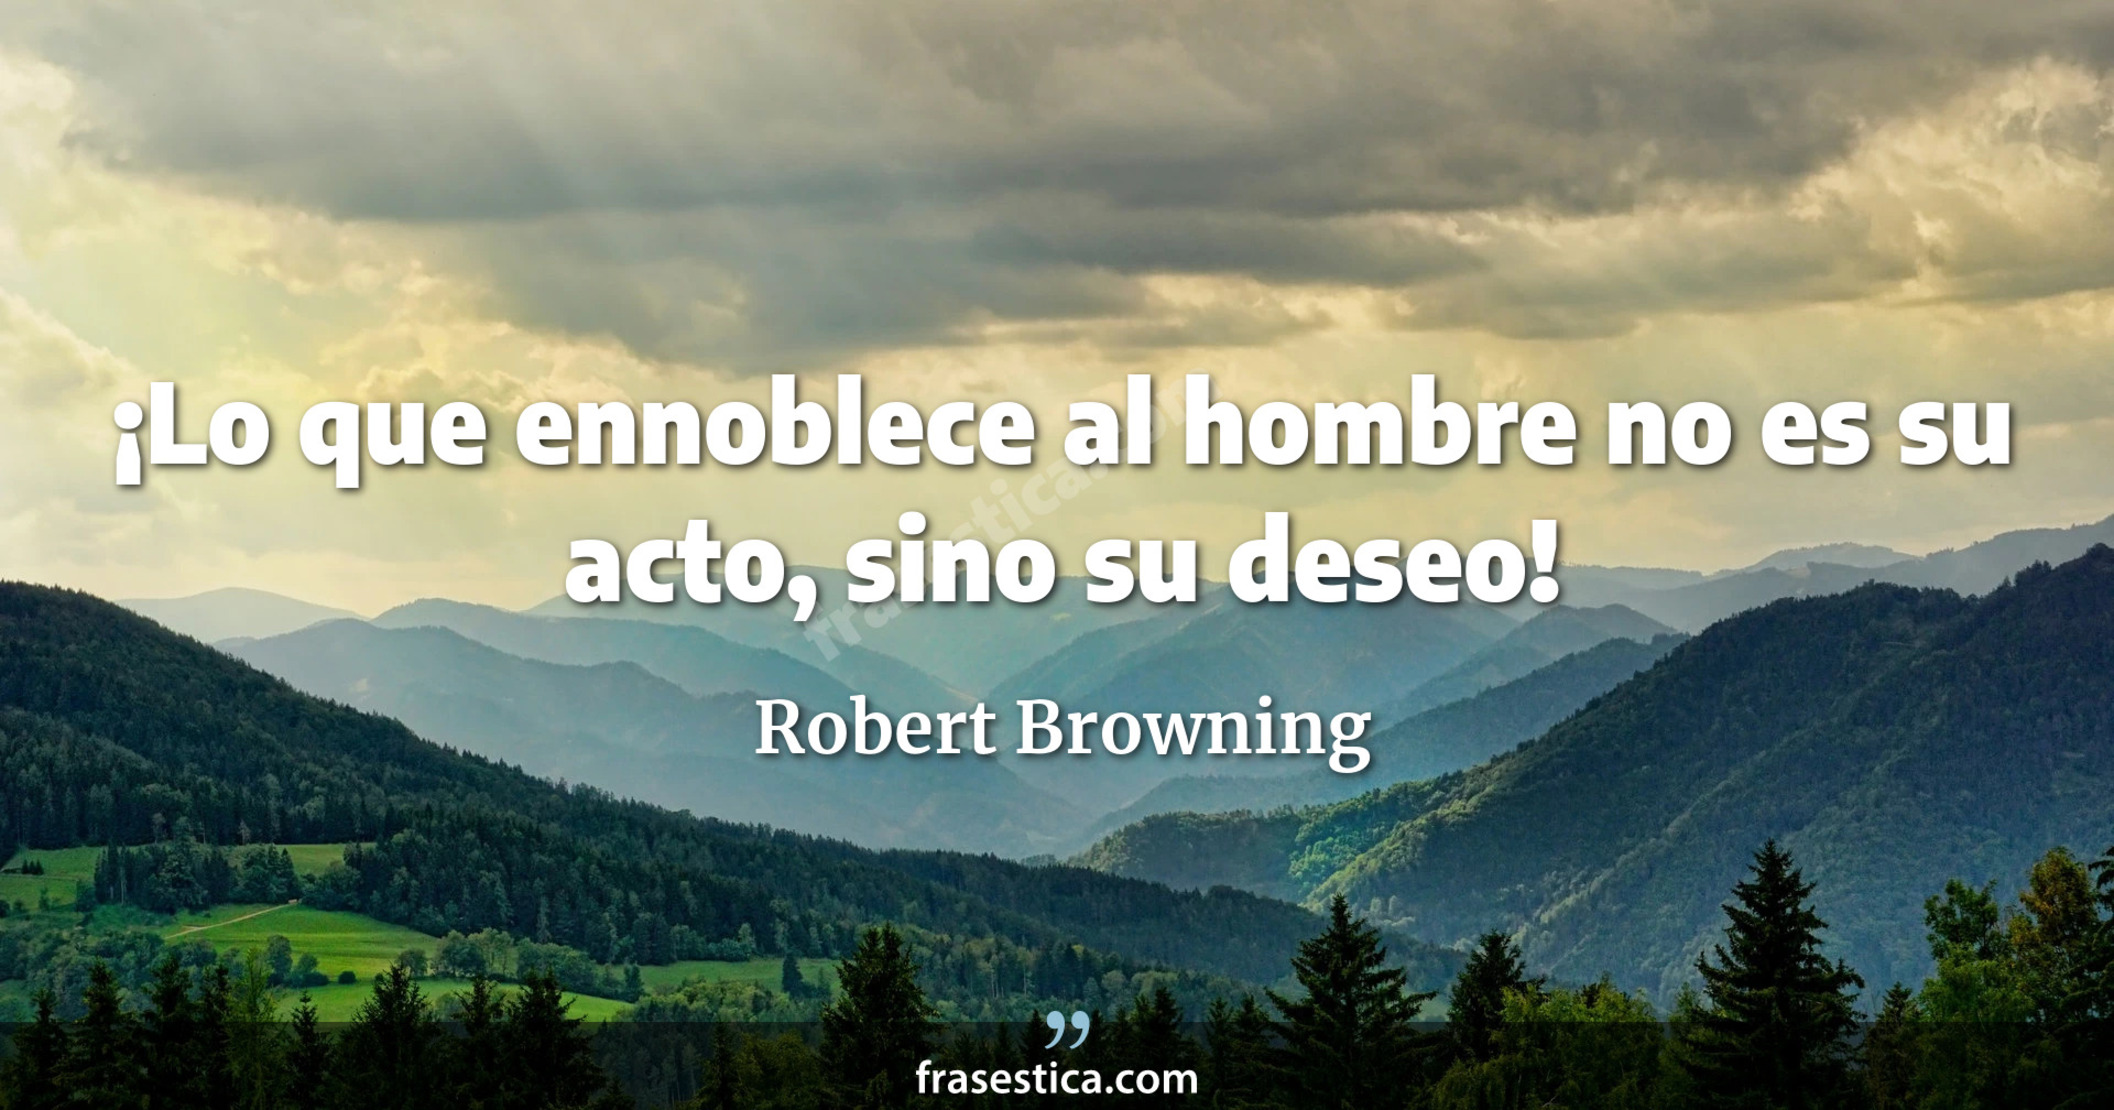 ¡Lo que ennoblece al hombre no es su acto, sino su deseo! - Robert Browning